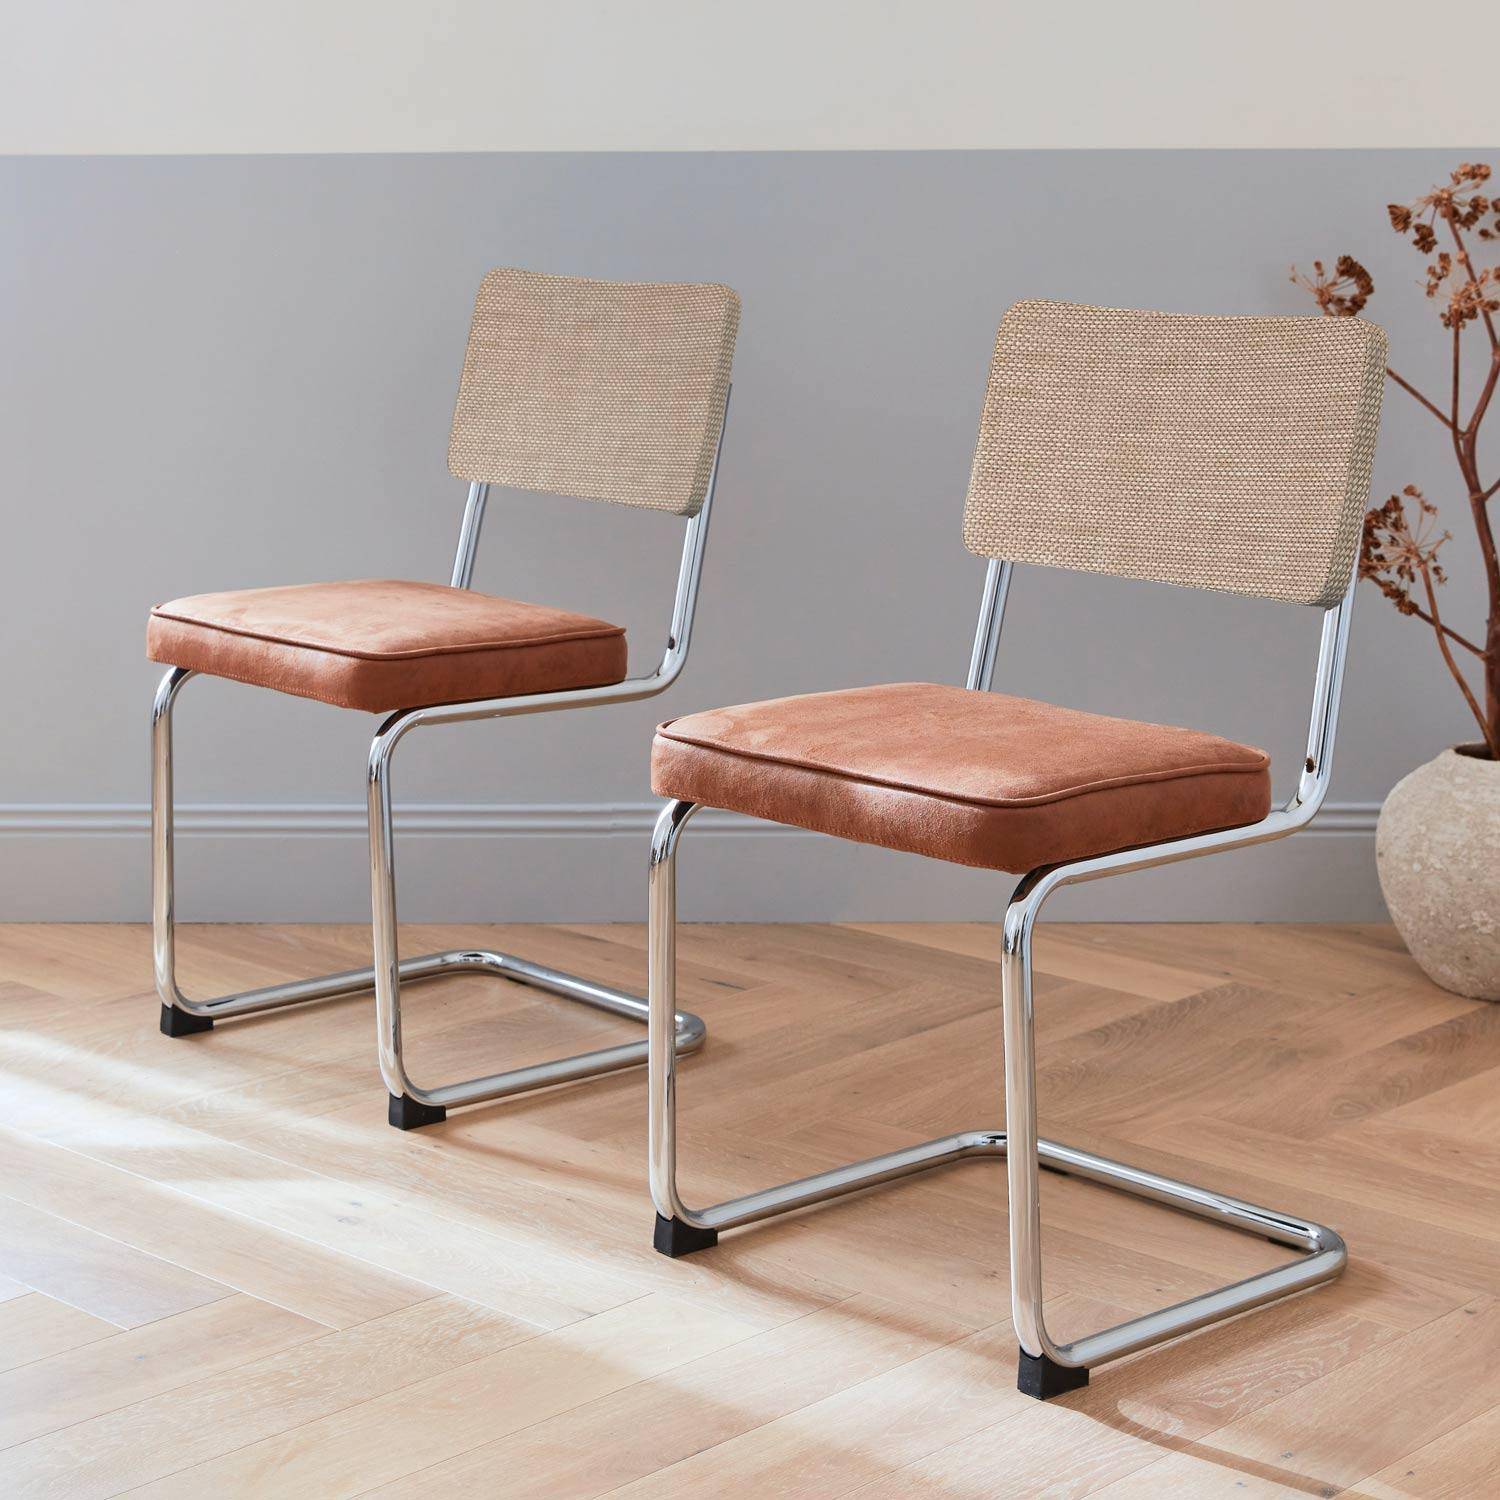 2 cadeiras cantilever - Maja - tecido castanho claro e resina com efeito rattan, 46 x 54,5 x 84,5 cm Photo1